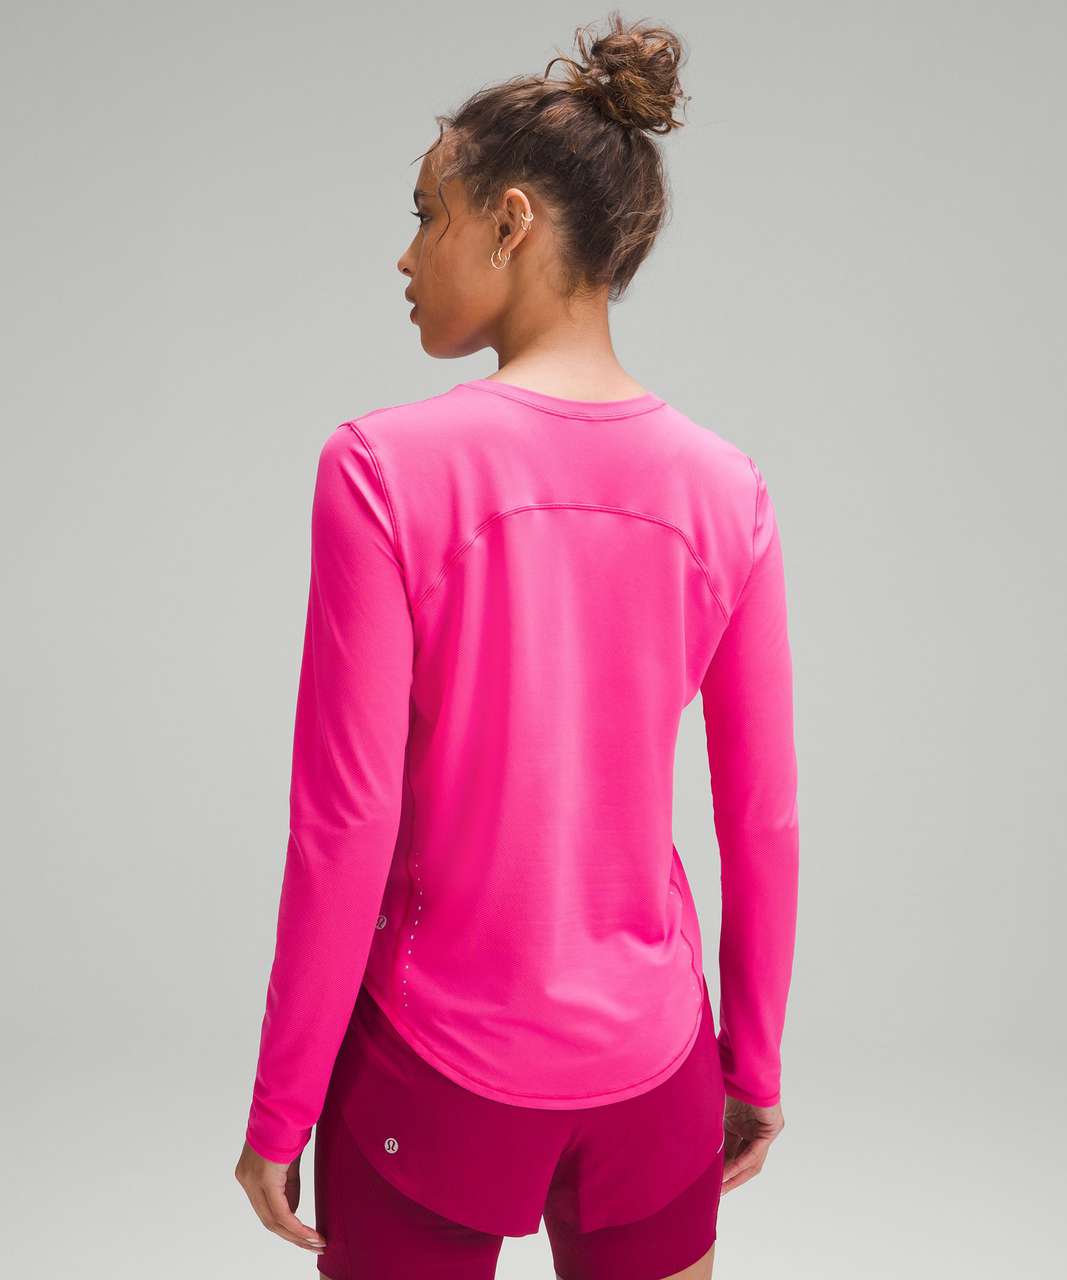 lululemon Align™ T-Shirt, Sonic Pink